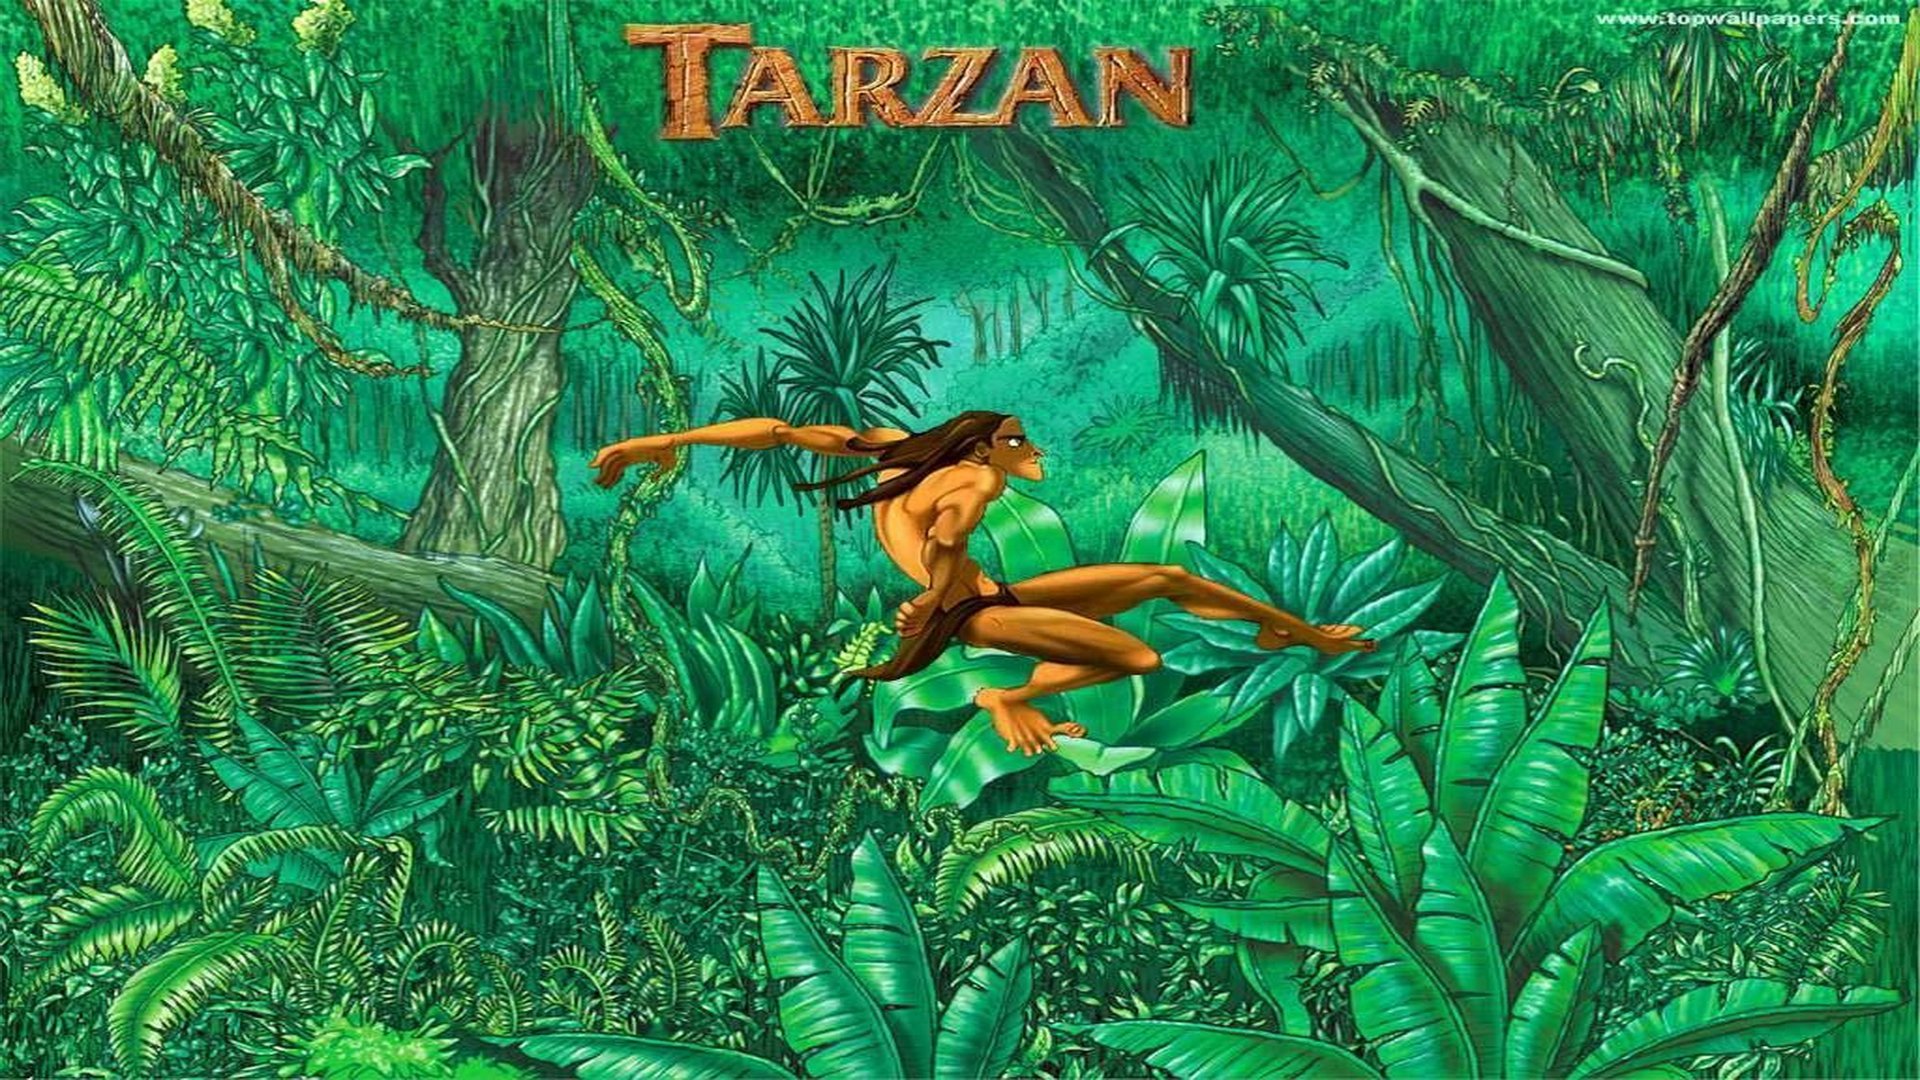 Tarzan Wallpaper Hd